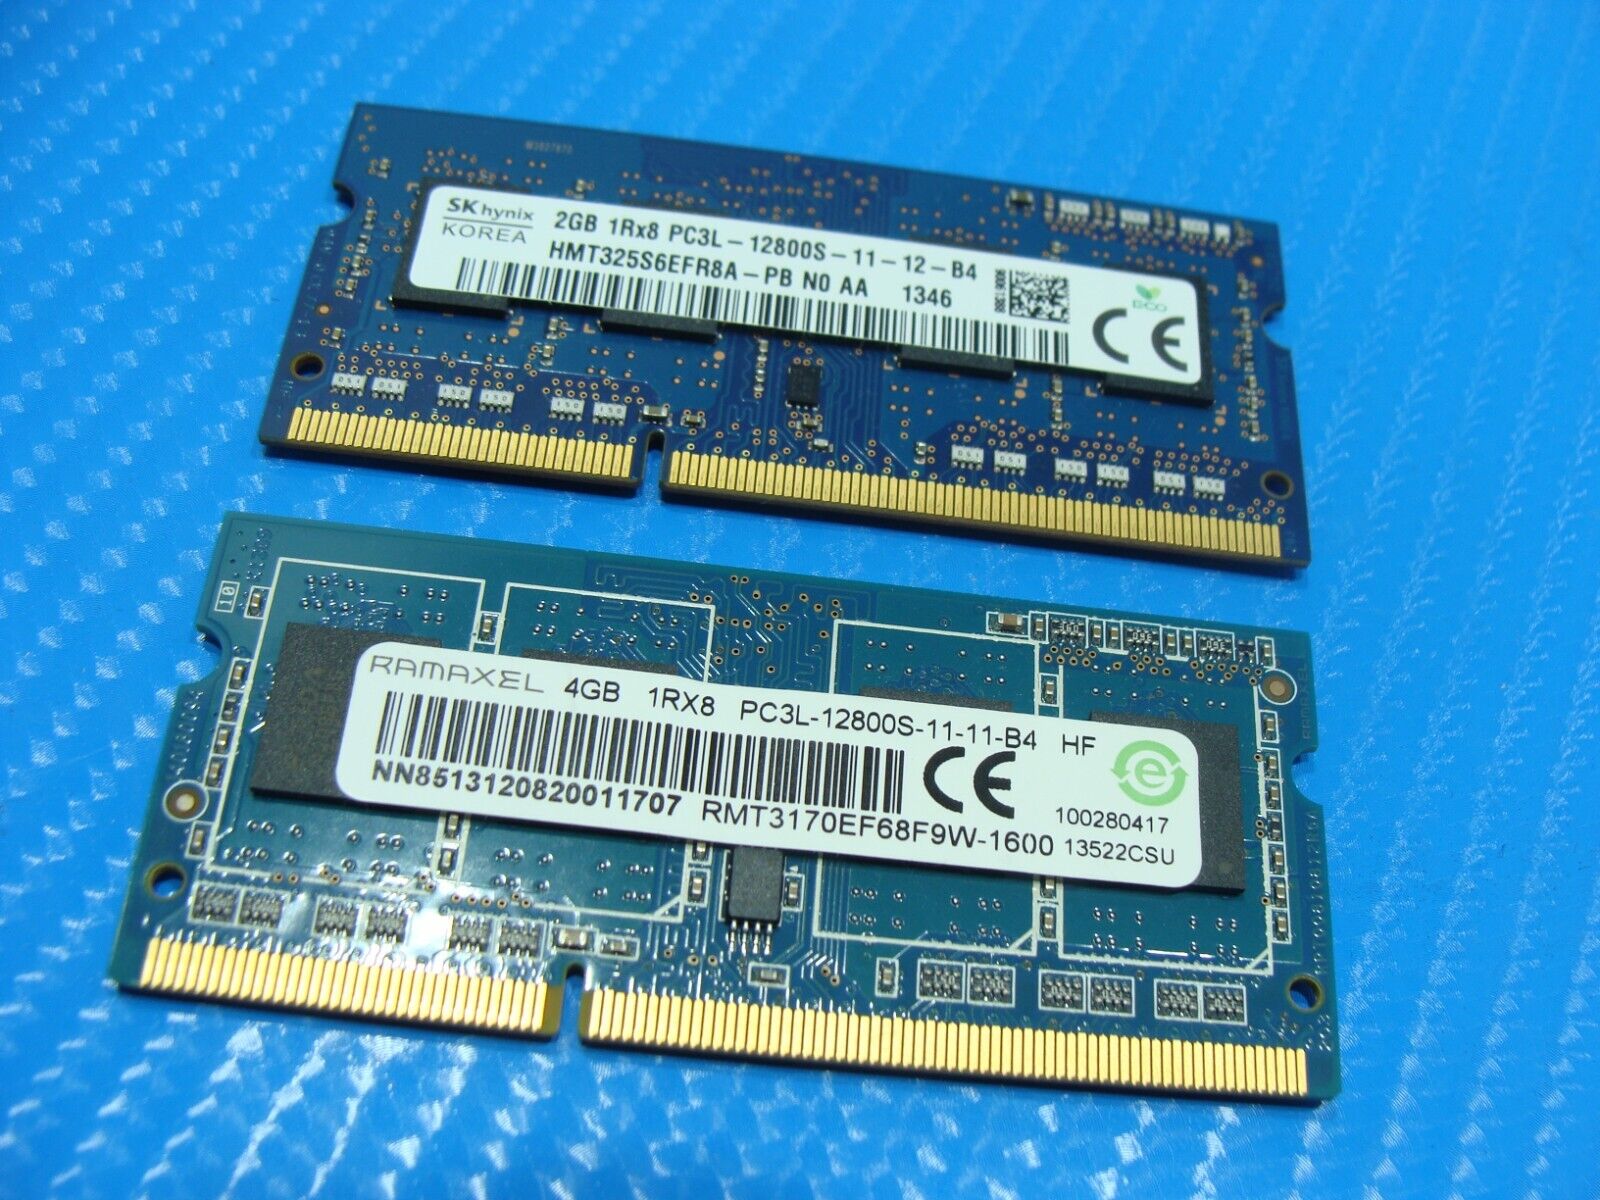 HP Envy 15-j 6GB (2GB & 4GB) Memory RAM SO-DIMM PC3L-12800S RMT3170EB68F9W-1600